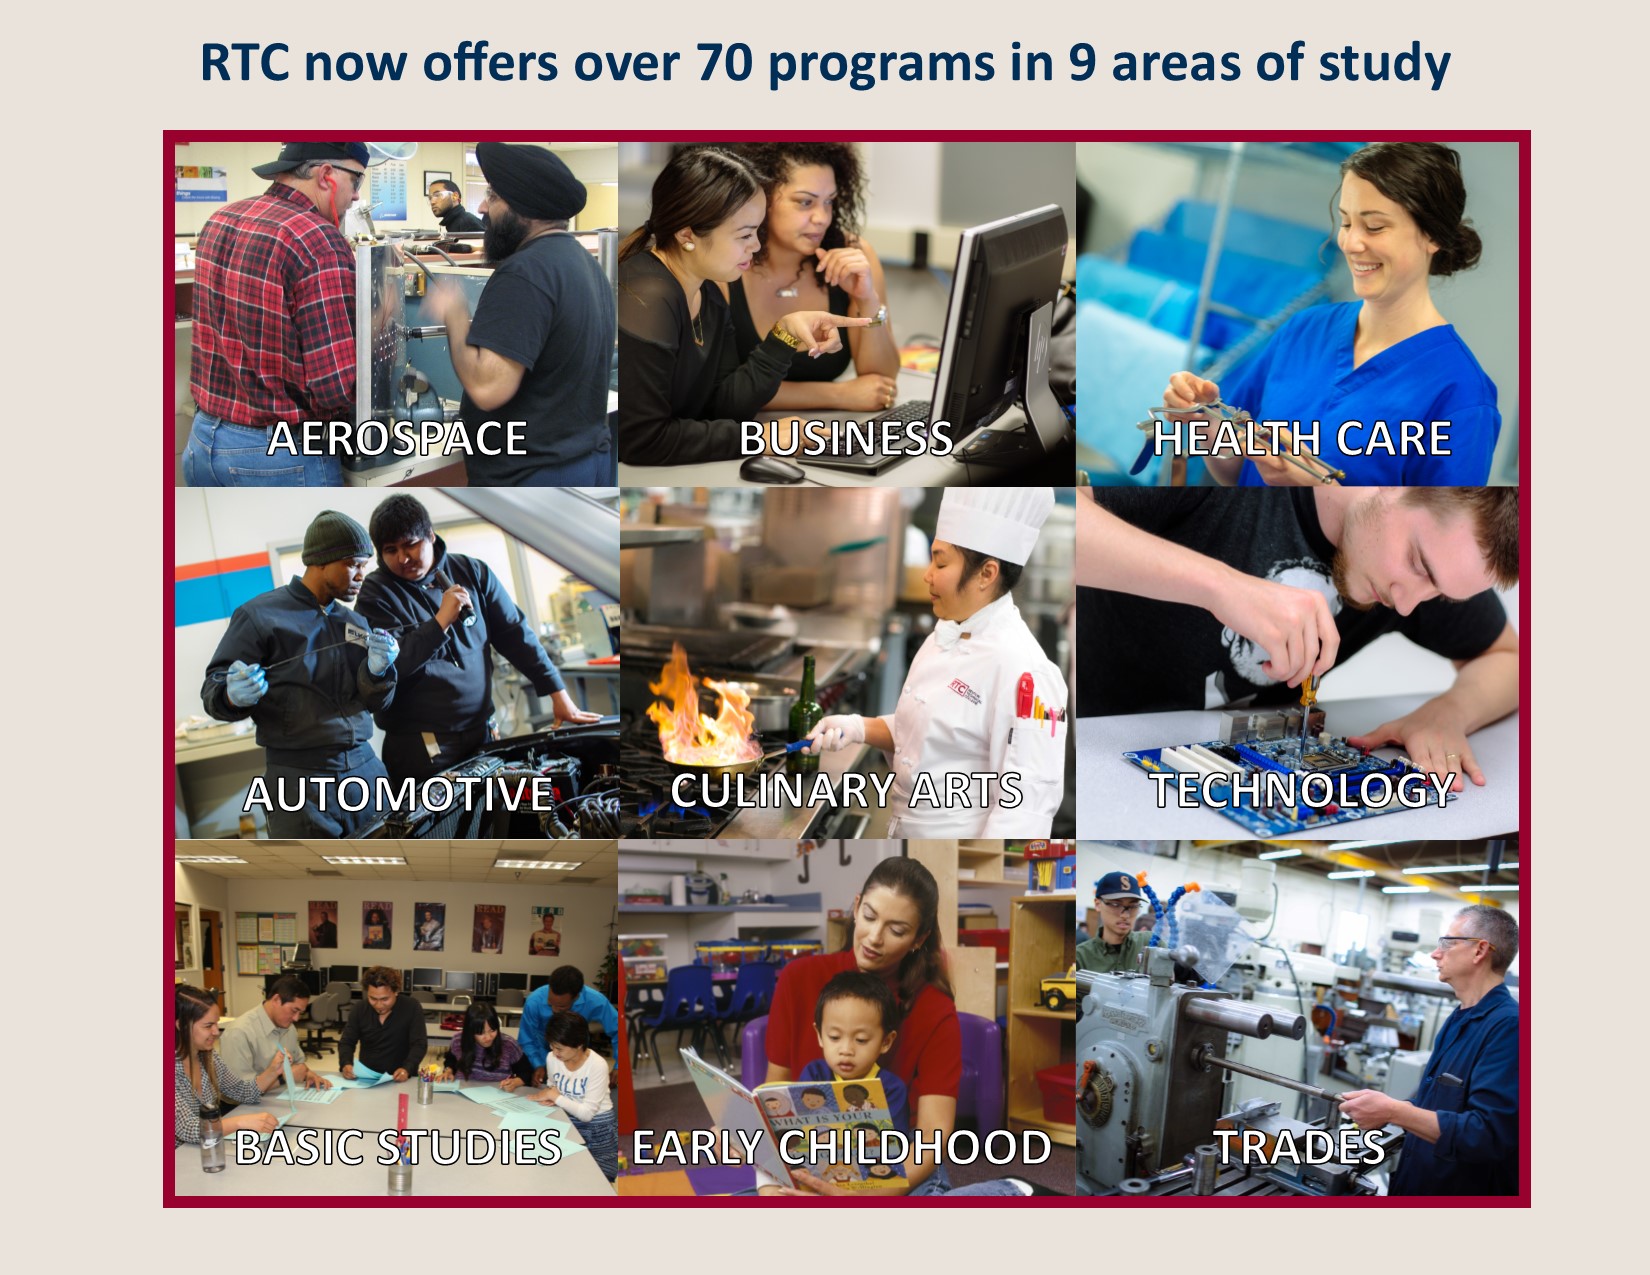 RTC programs